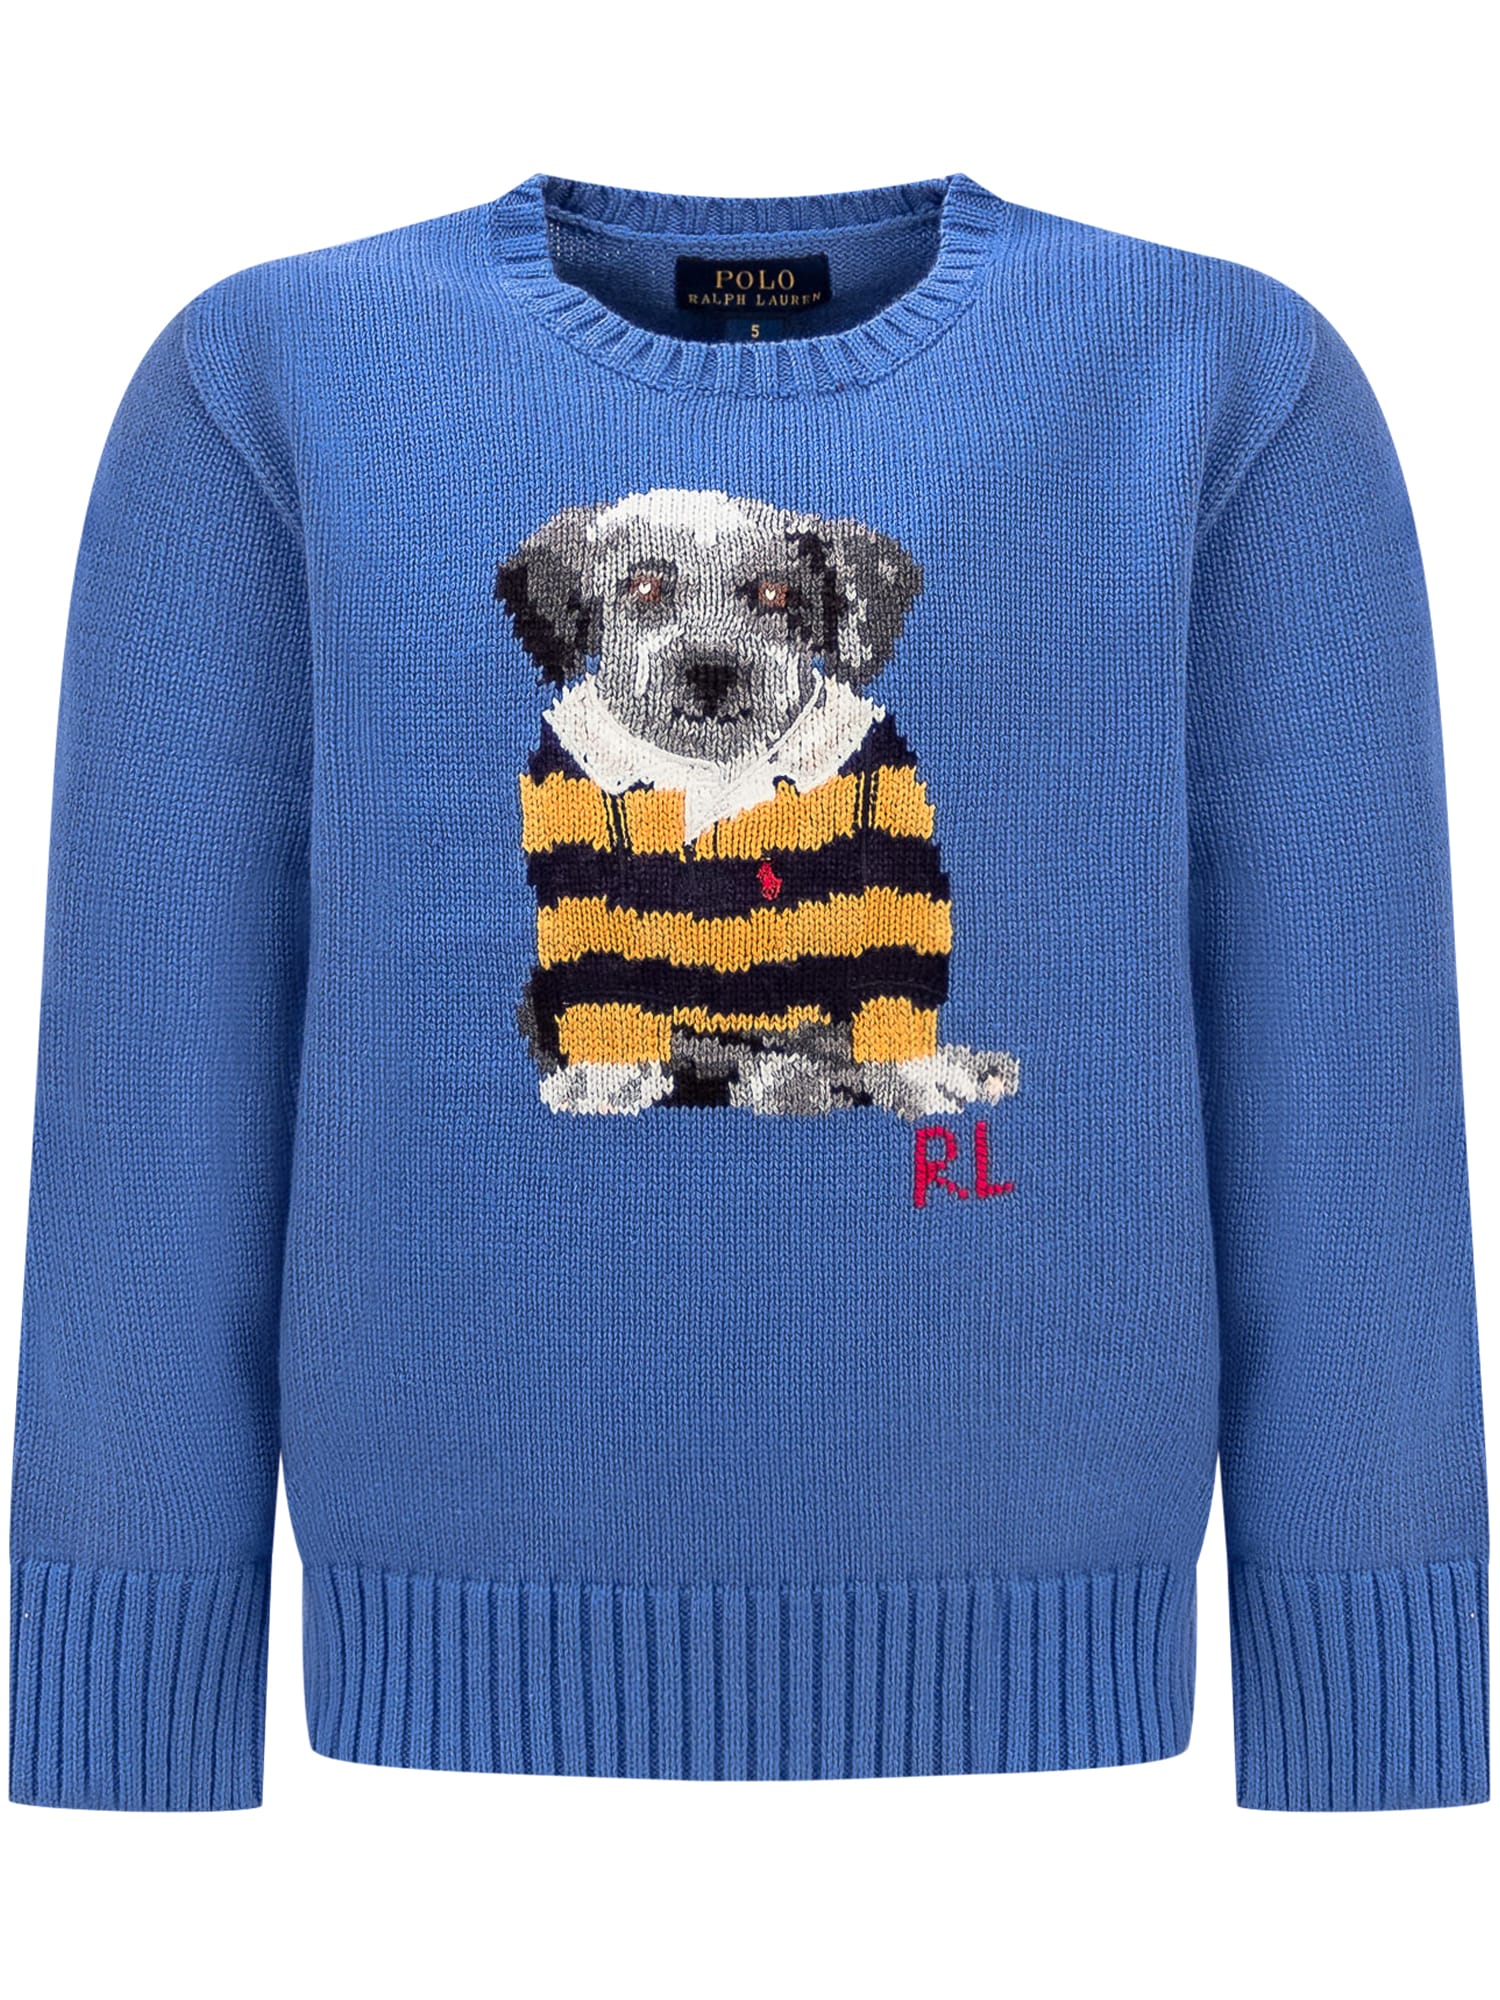 Polo Ralph Lauren Kids' Puppy Shirt In New England Blue